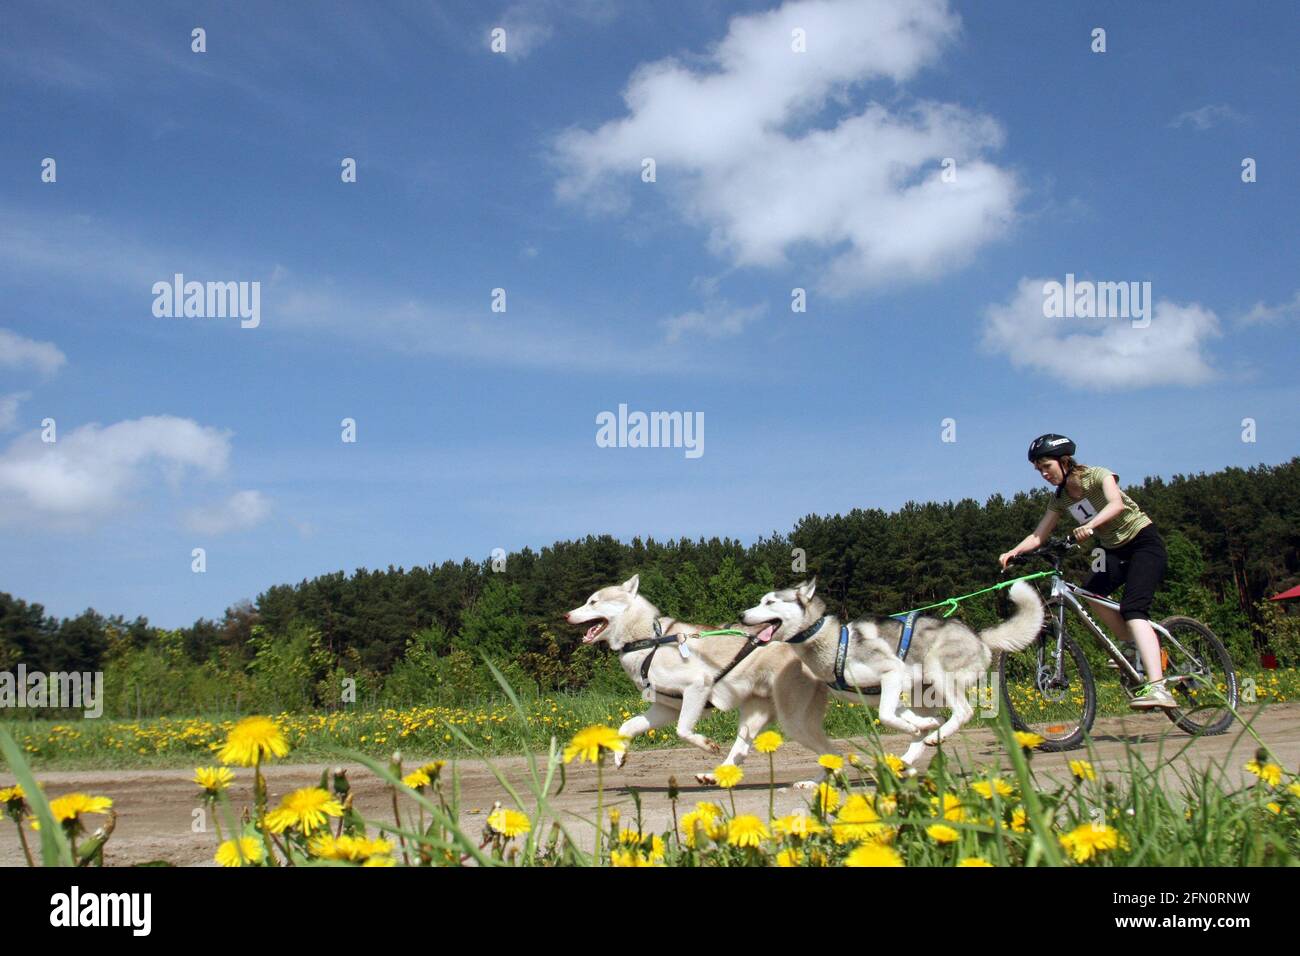 Bélarus. 2010 mai : les chiens Husky courent devant la jeune fille sur un vélo sur fond de forêt et de ciel bleu, pissenlits jaunes au premier plan. Banque D'Images